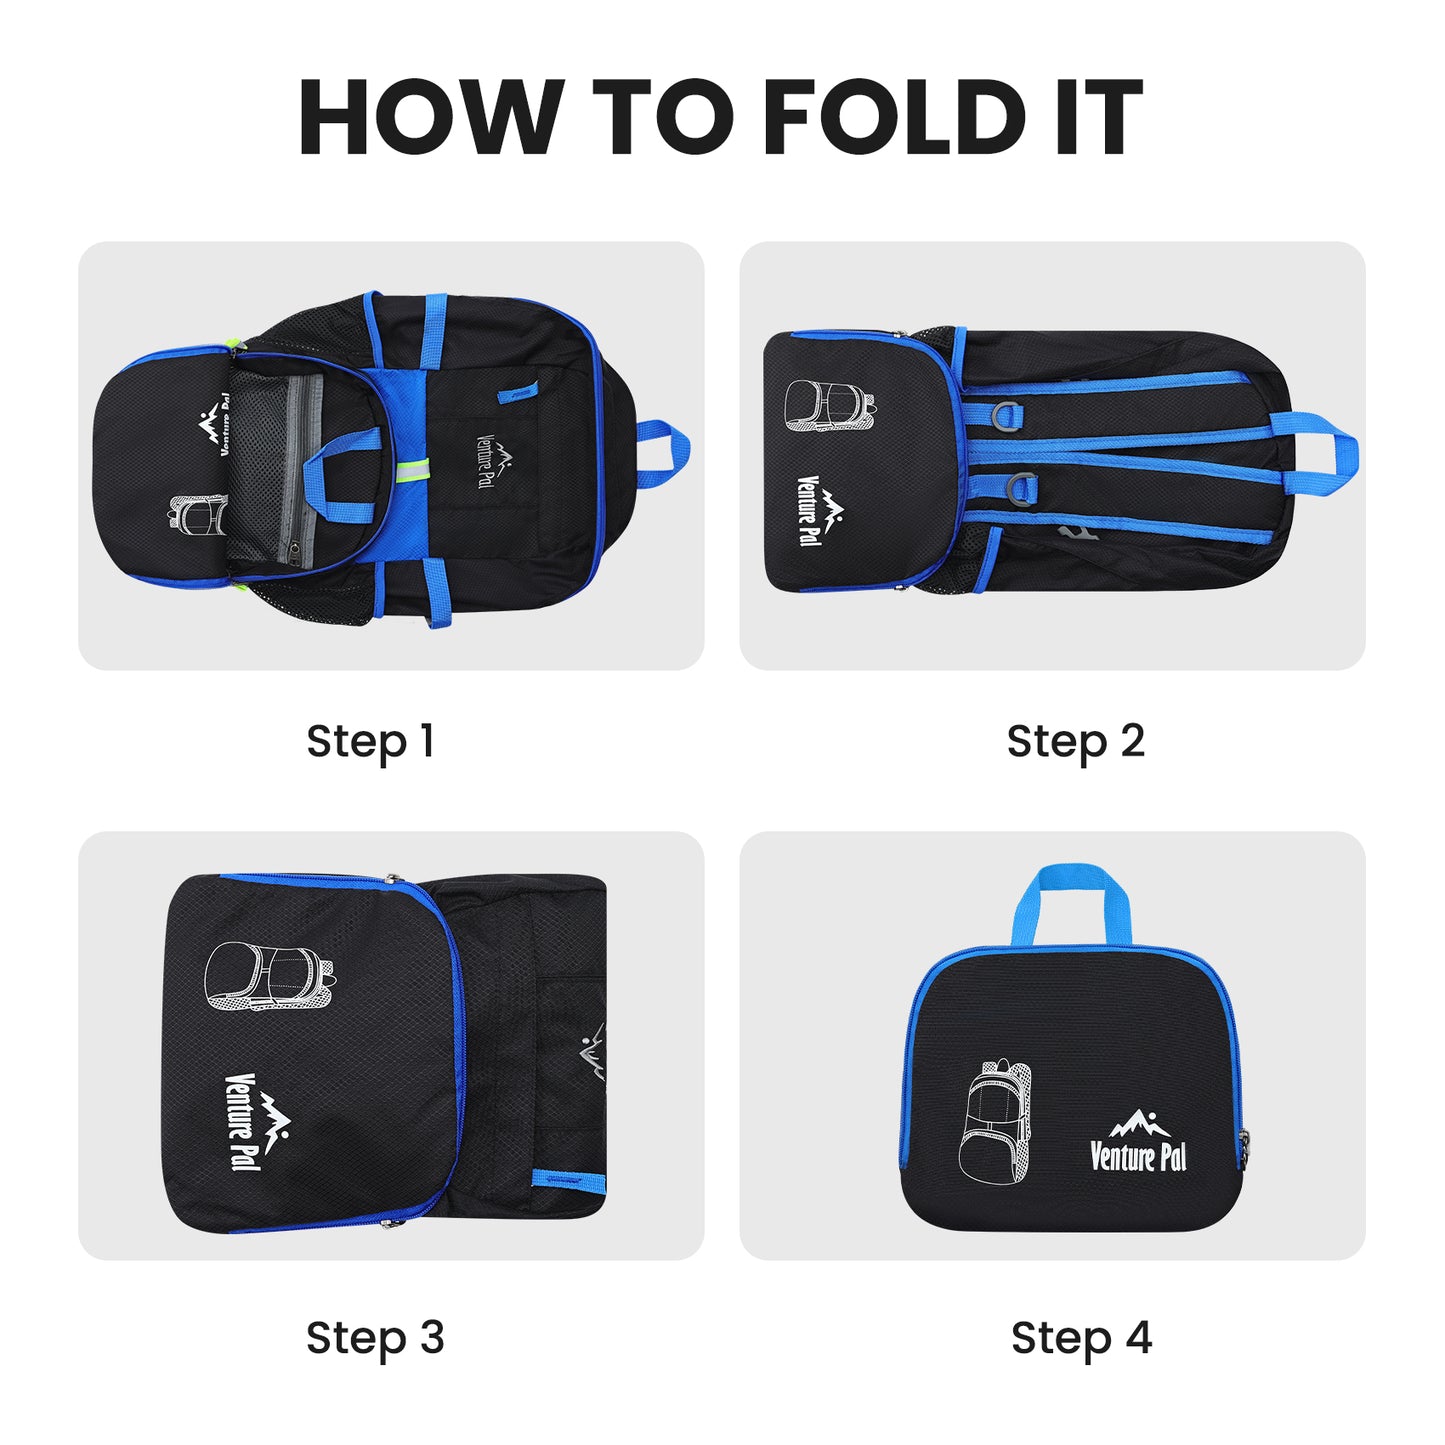 Venture Pal Black/Blue 35L Double-Layer Bottom & Shoulder Straps Sports Backpack